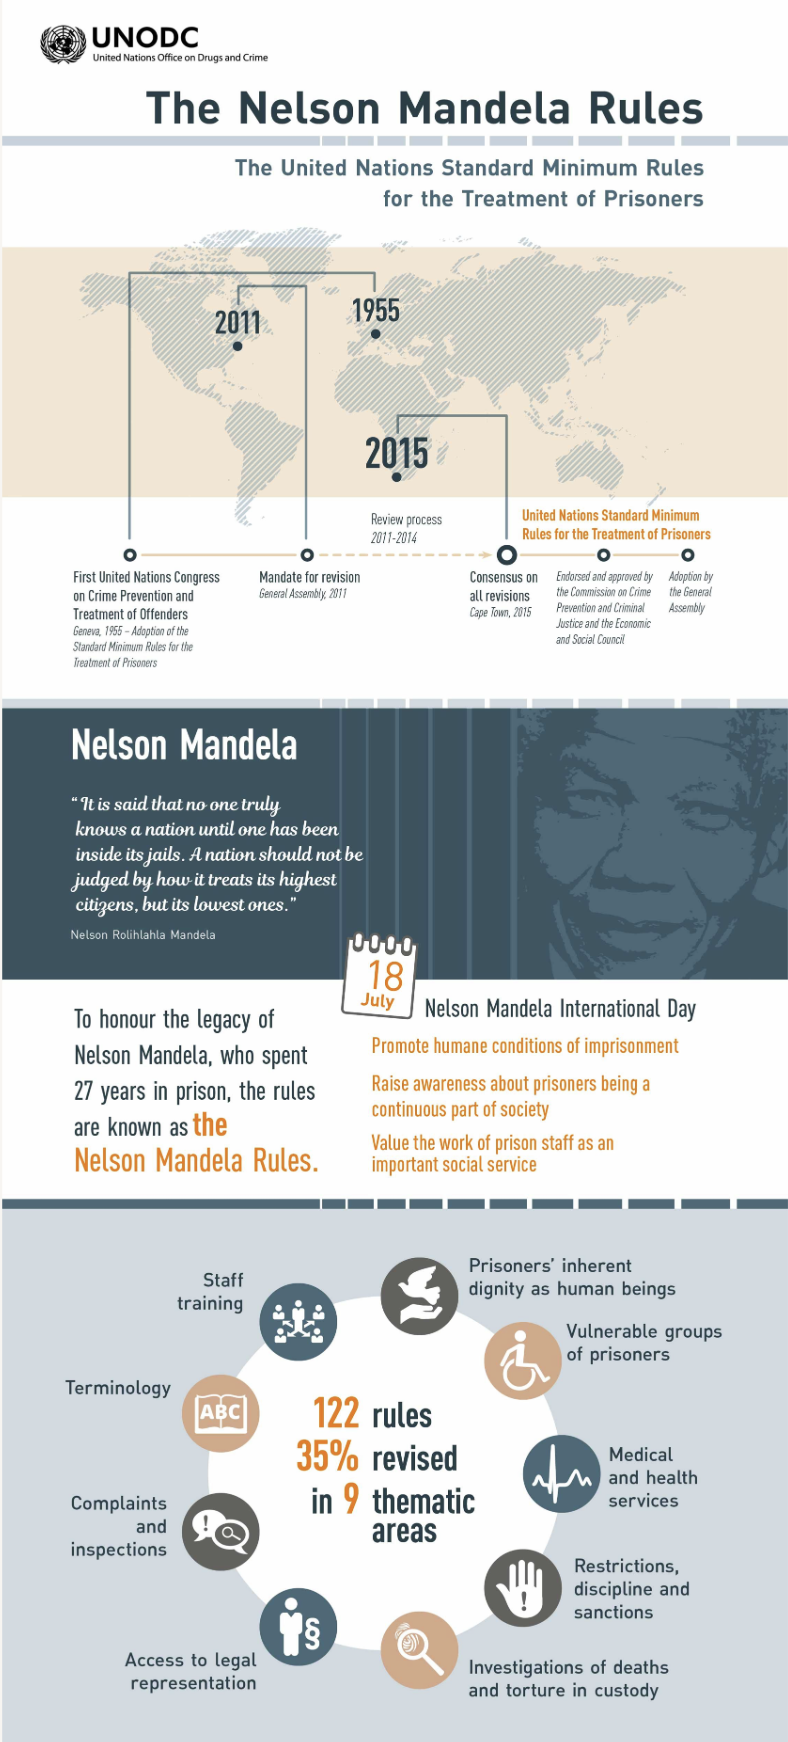 The Nelson Mandela Rules